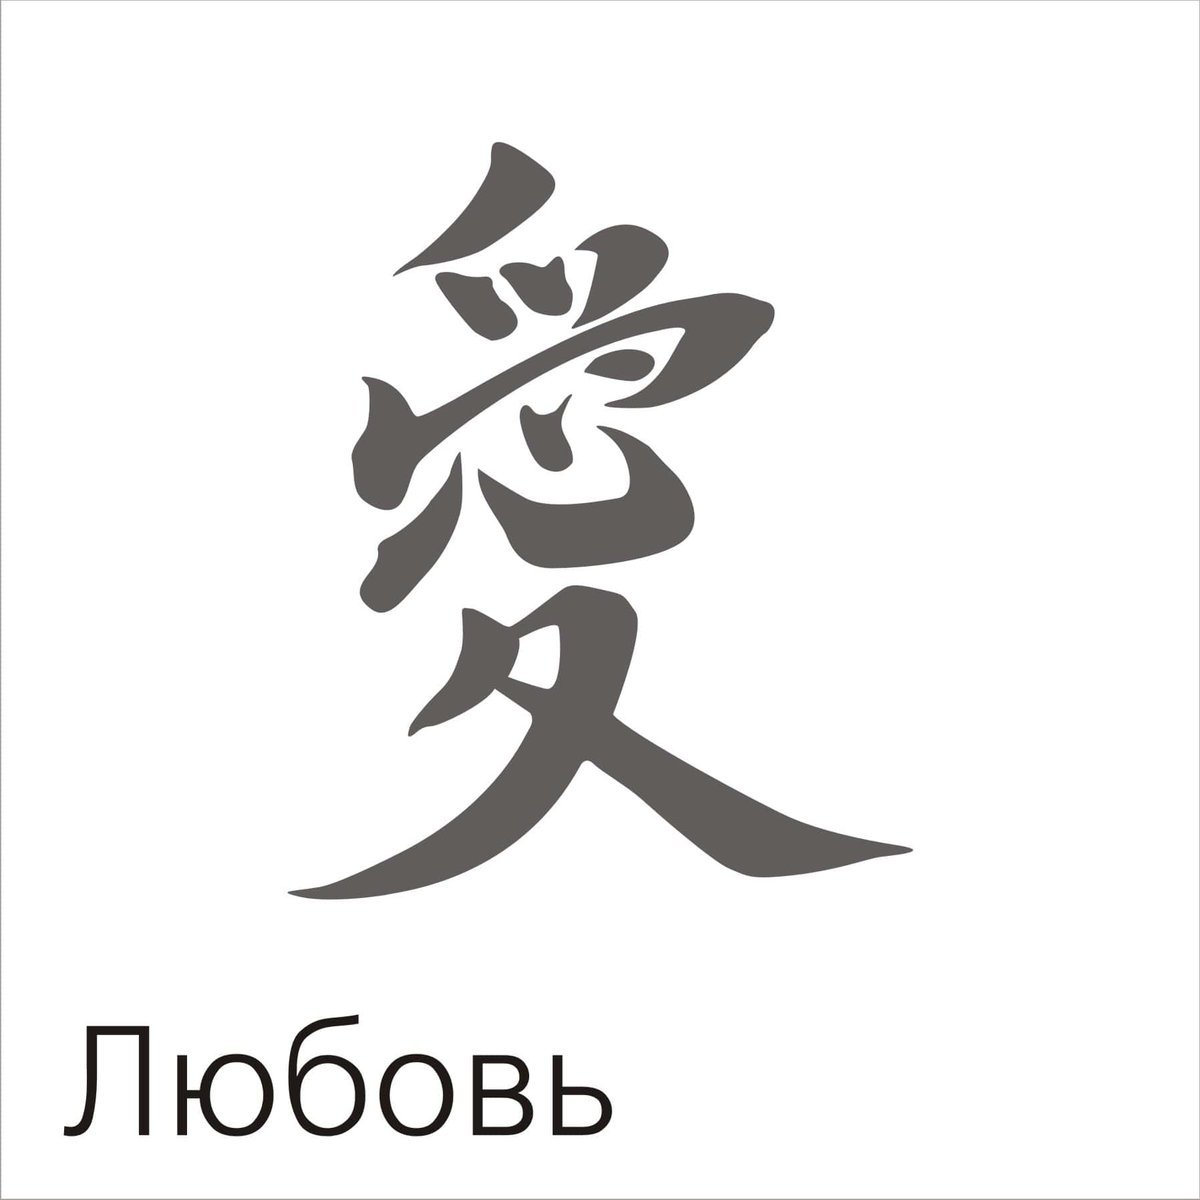 2187,китайский иероглиф любовь: во всех подробностях